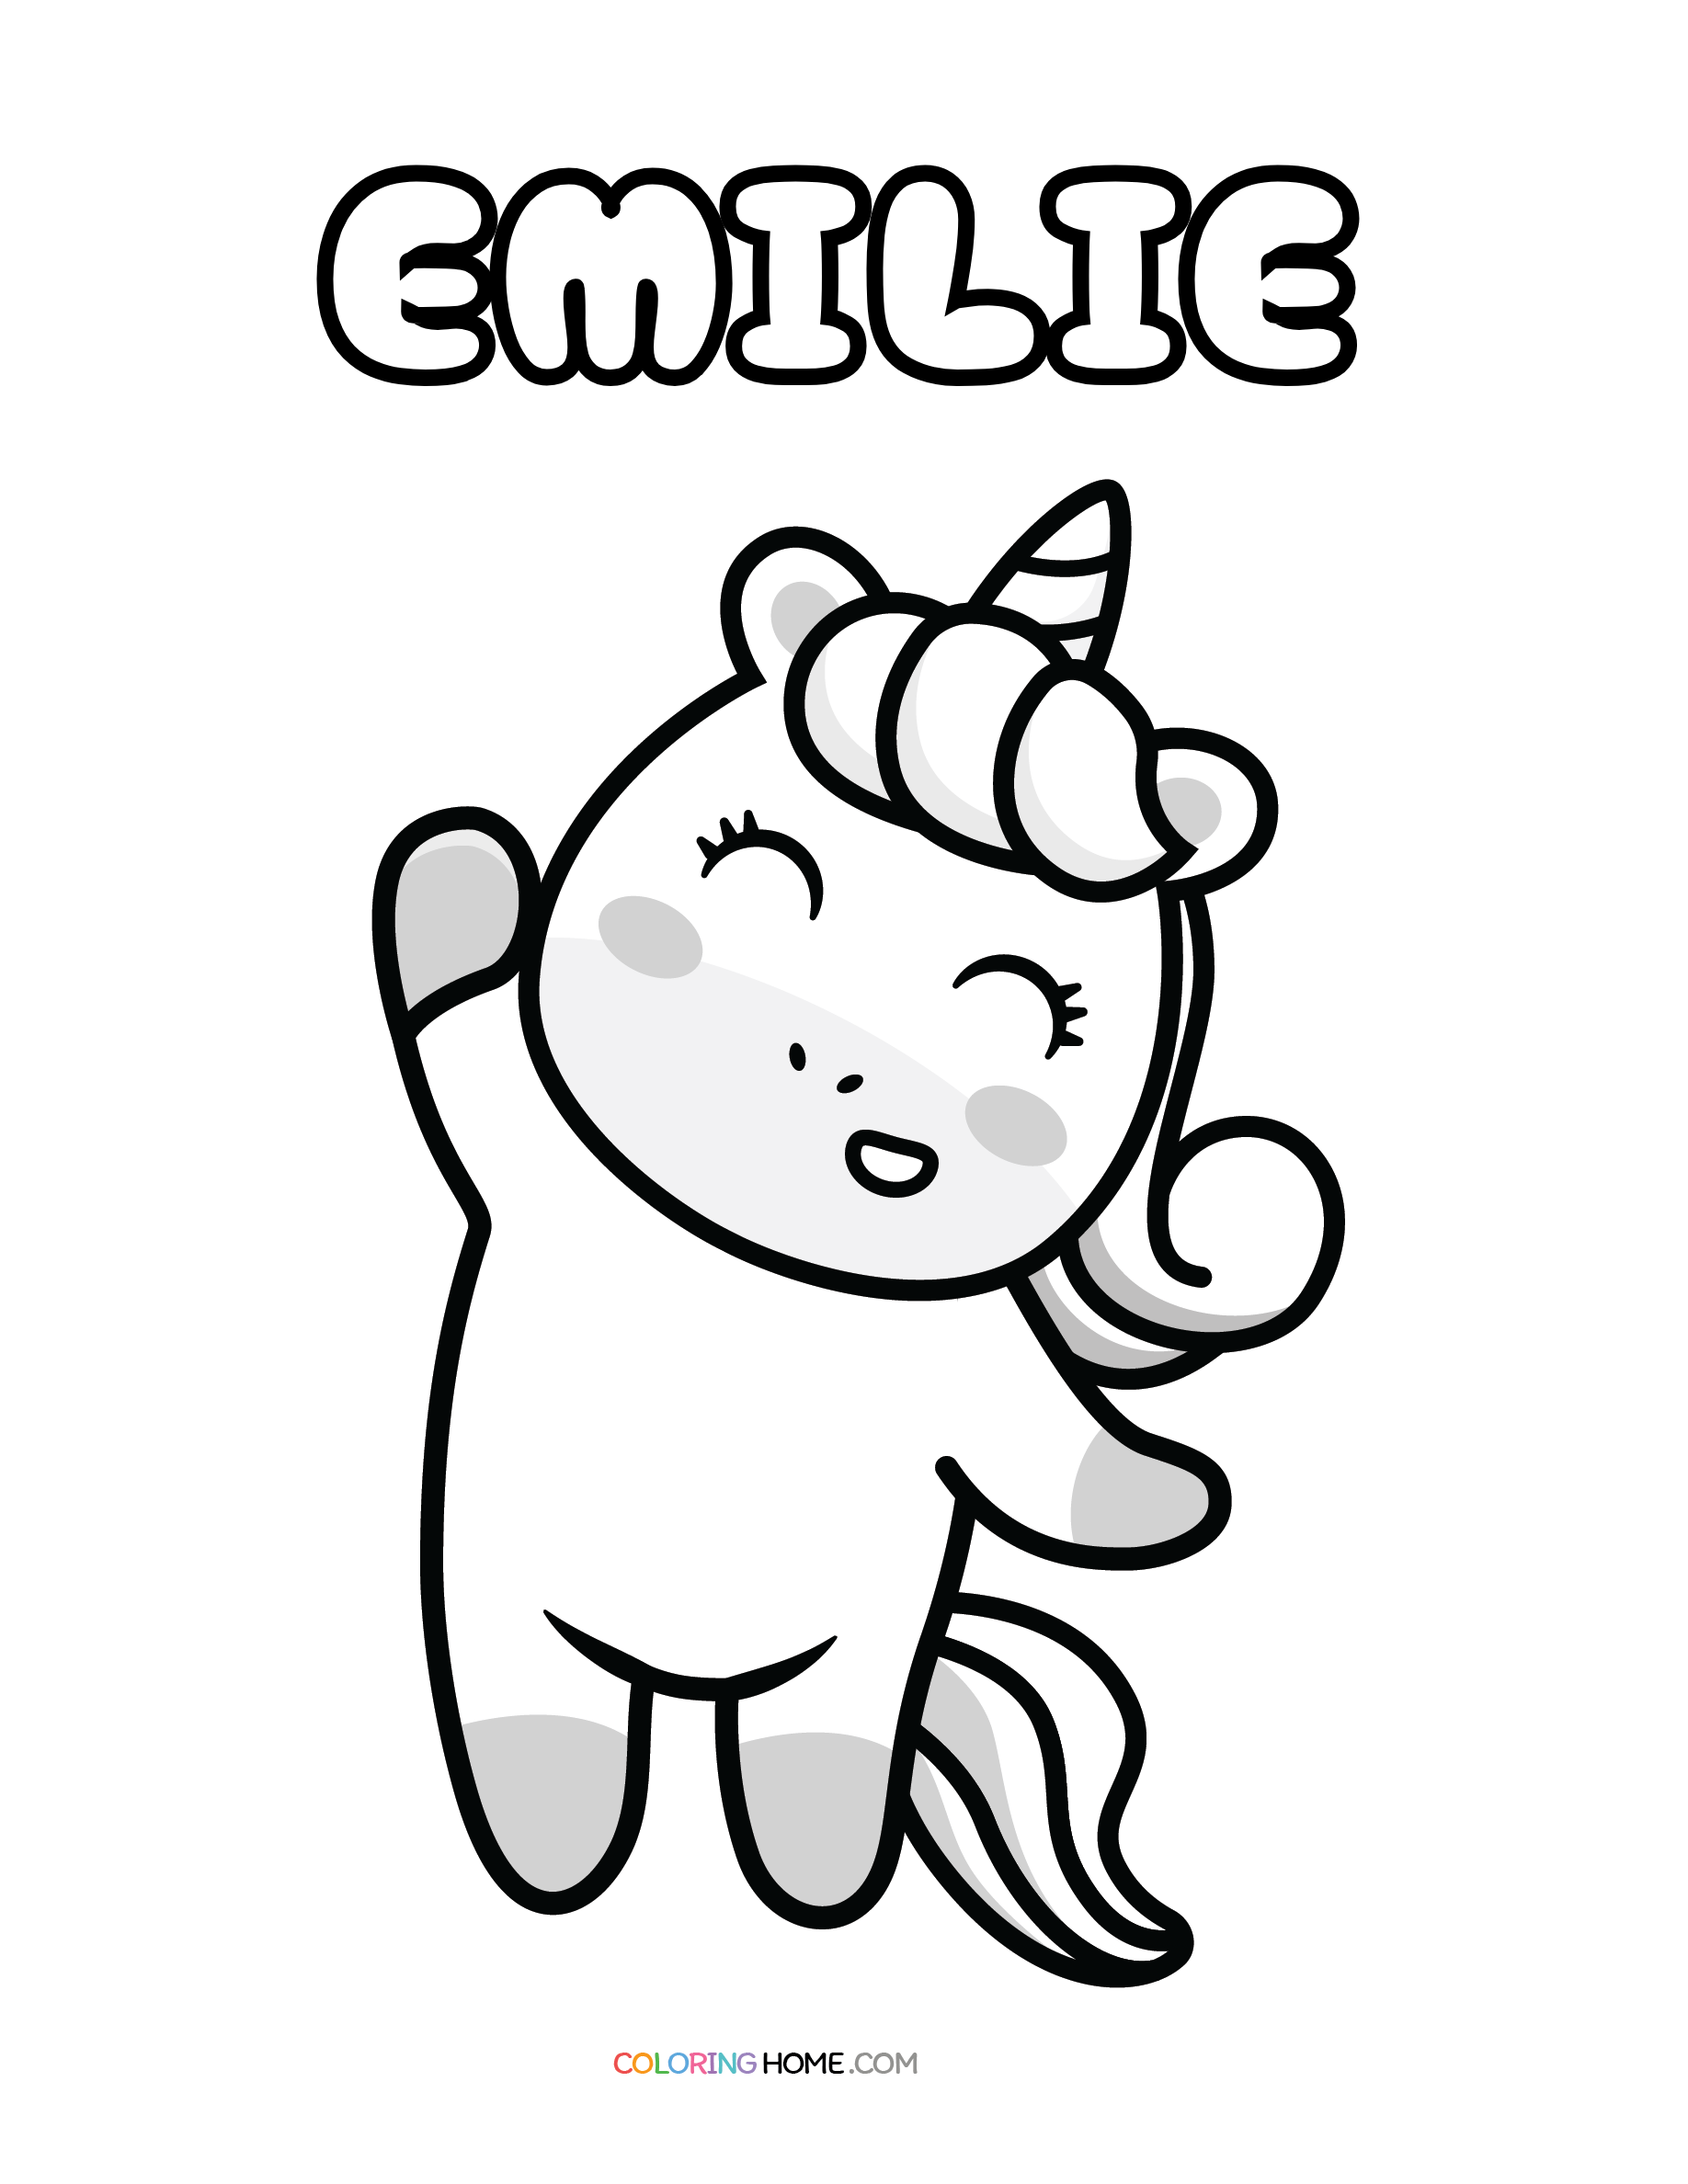 Emilie unicorn coloring page